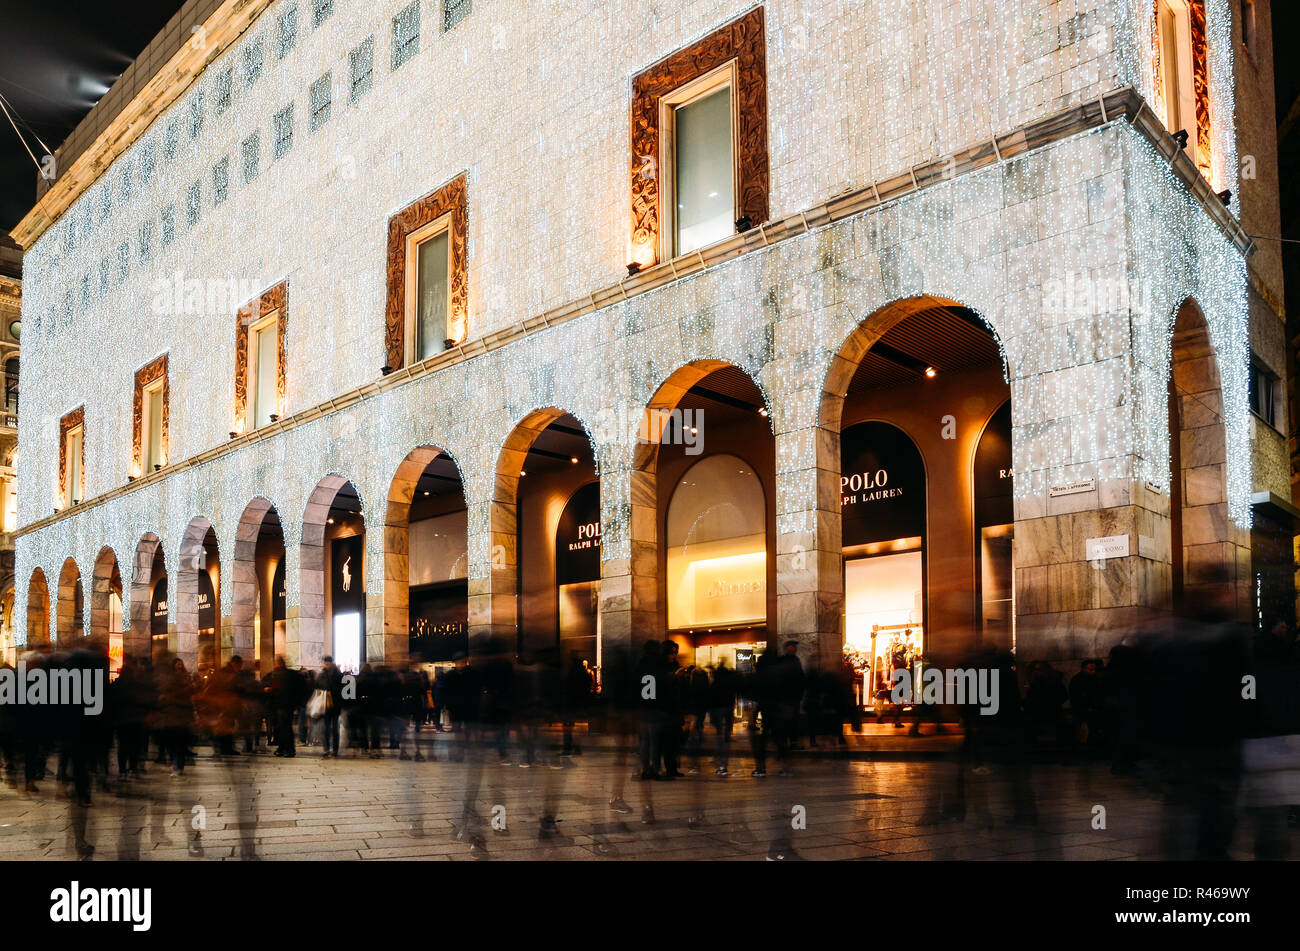 La facciata della Rinascente department store in Corso Vittorio Emanuele II vicino al Duomo di Milano, Italia. Il negozio è illuminato con luci di Natale in anticipo della stagione festiva Foto Stock